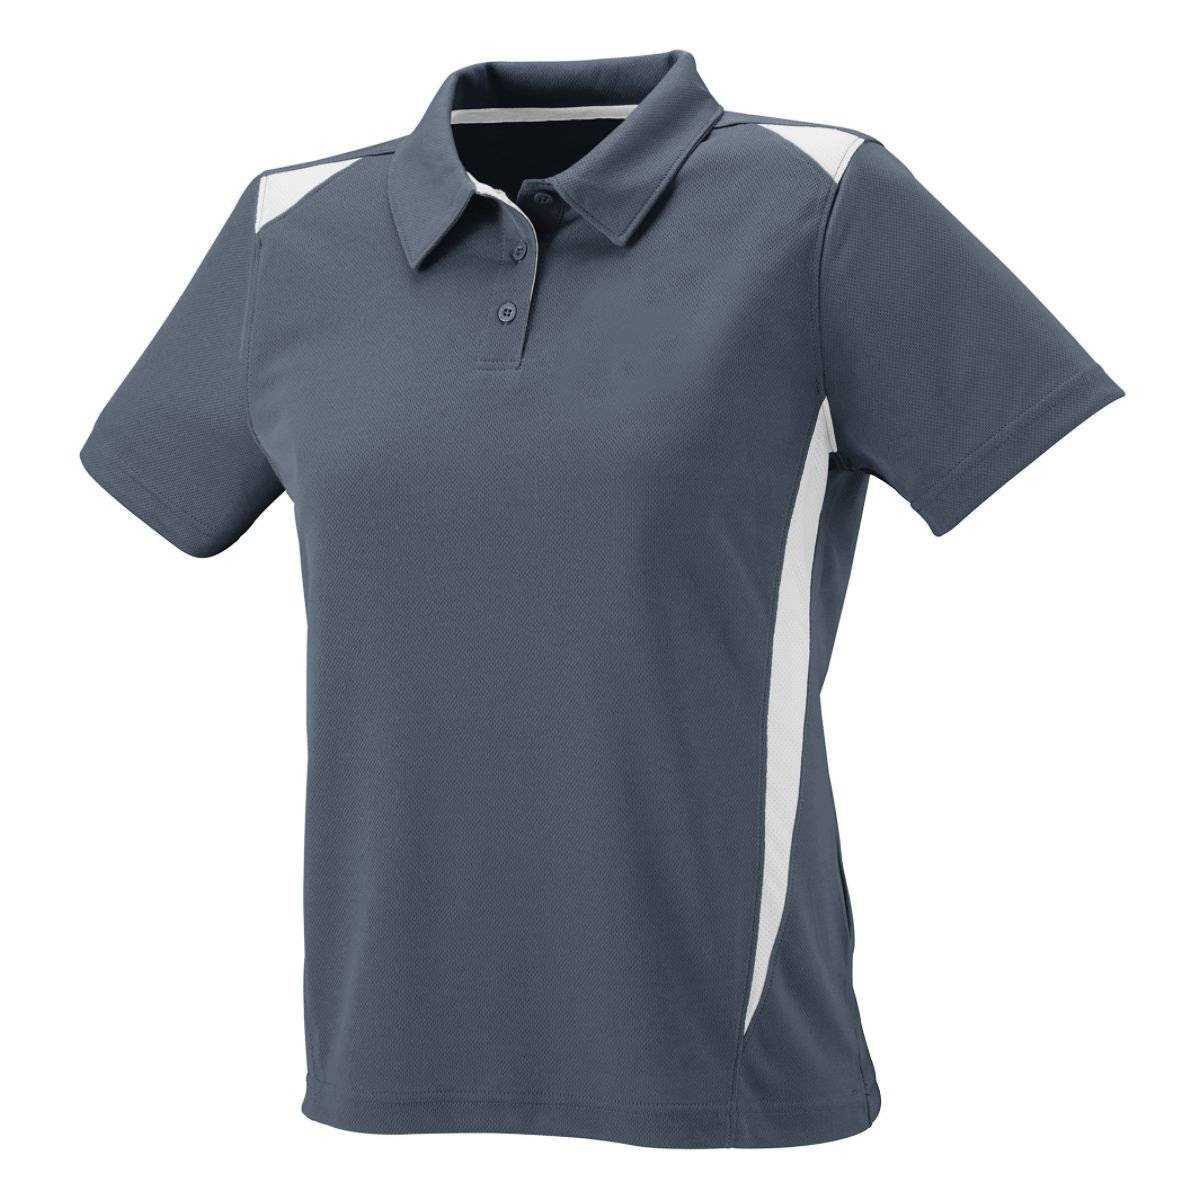 Augusta 5013 Ladies Premier Sport Shirt - Dark Gray White - HIT a Double